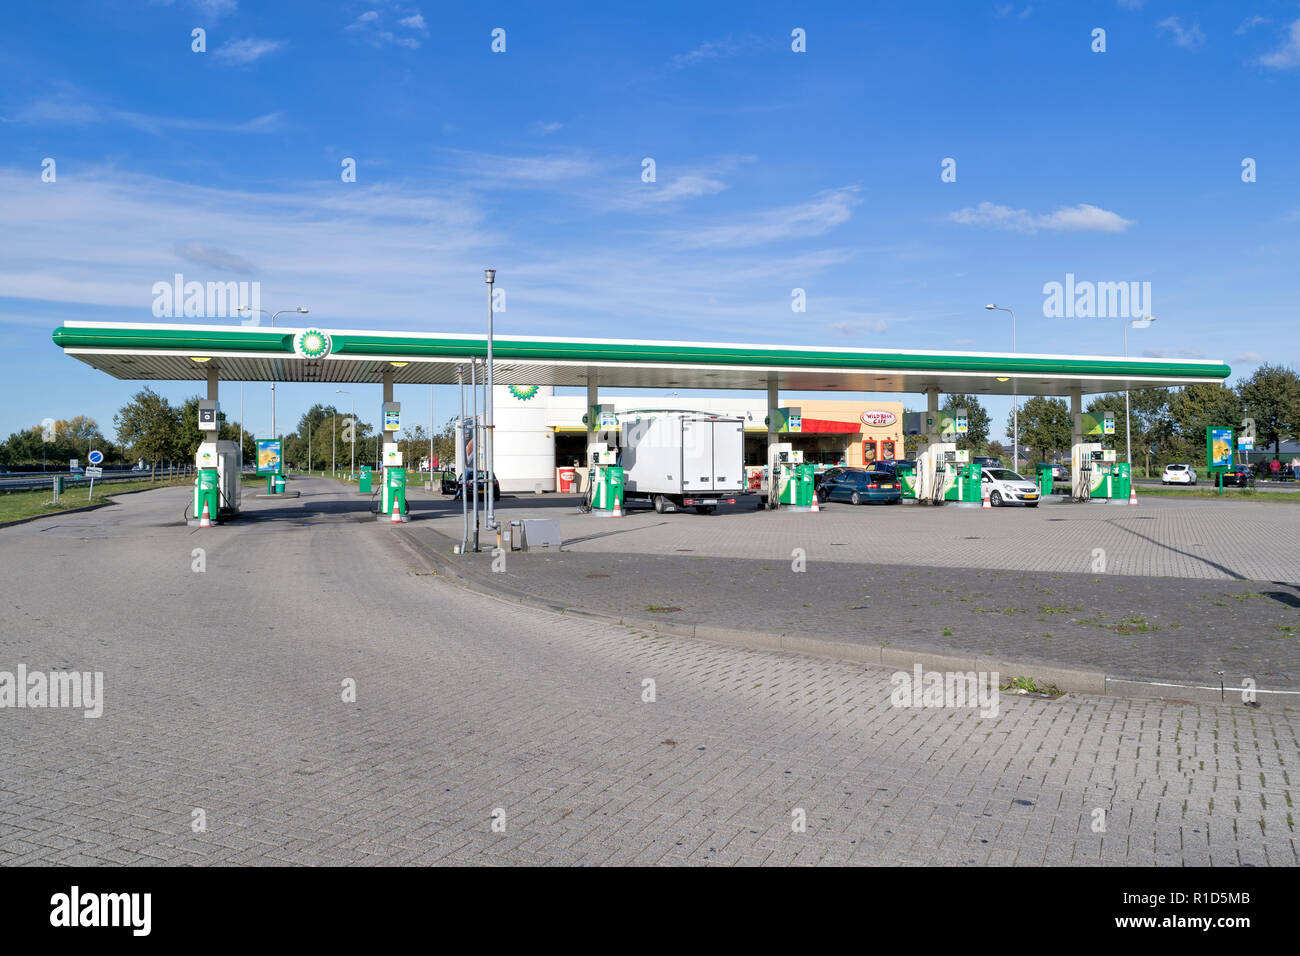 BP gas station in autostrada olandese. BP è una multinazionale britannica di petrolio e di gas company con sede a Londra, Inghilterra. Foto Stock